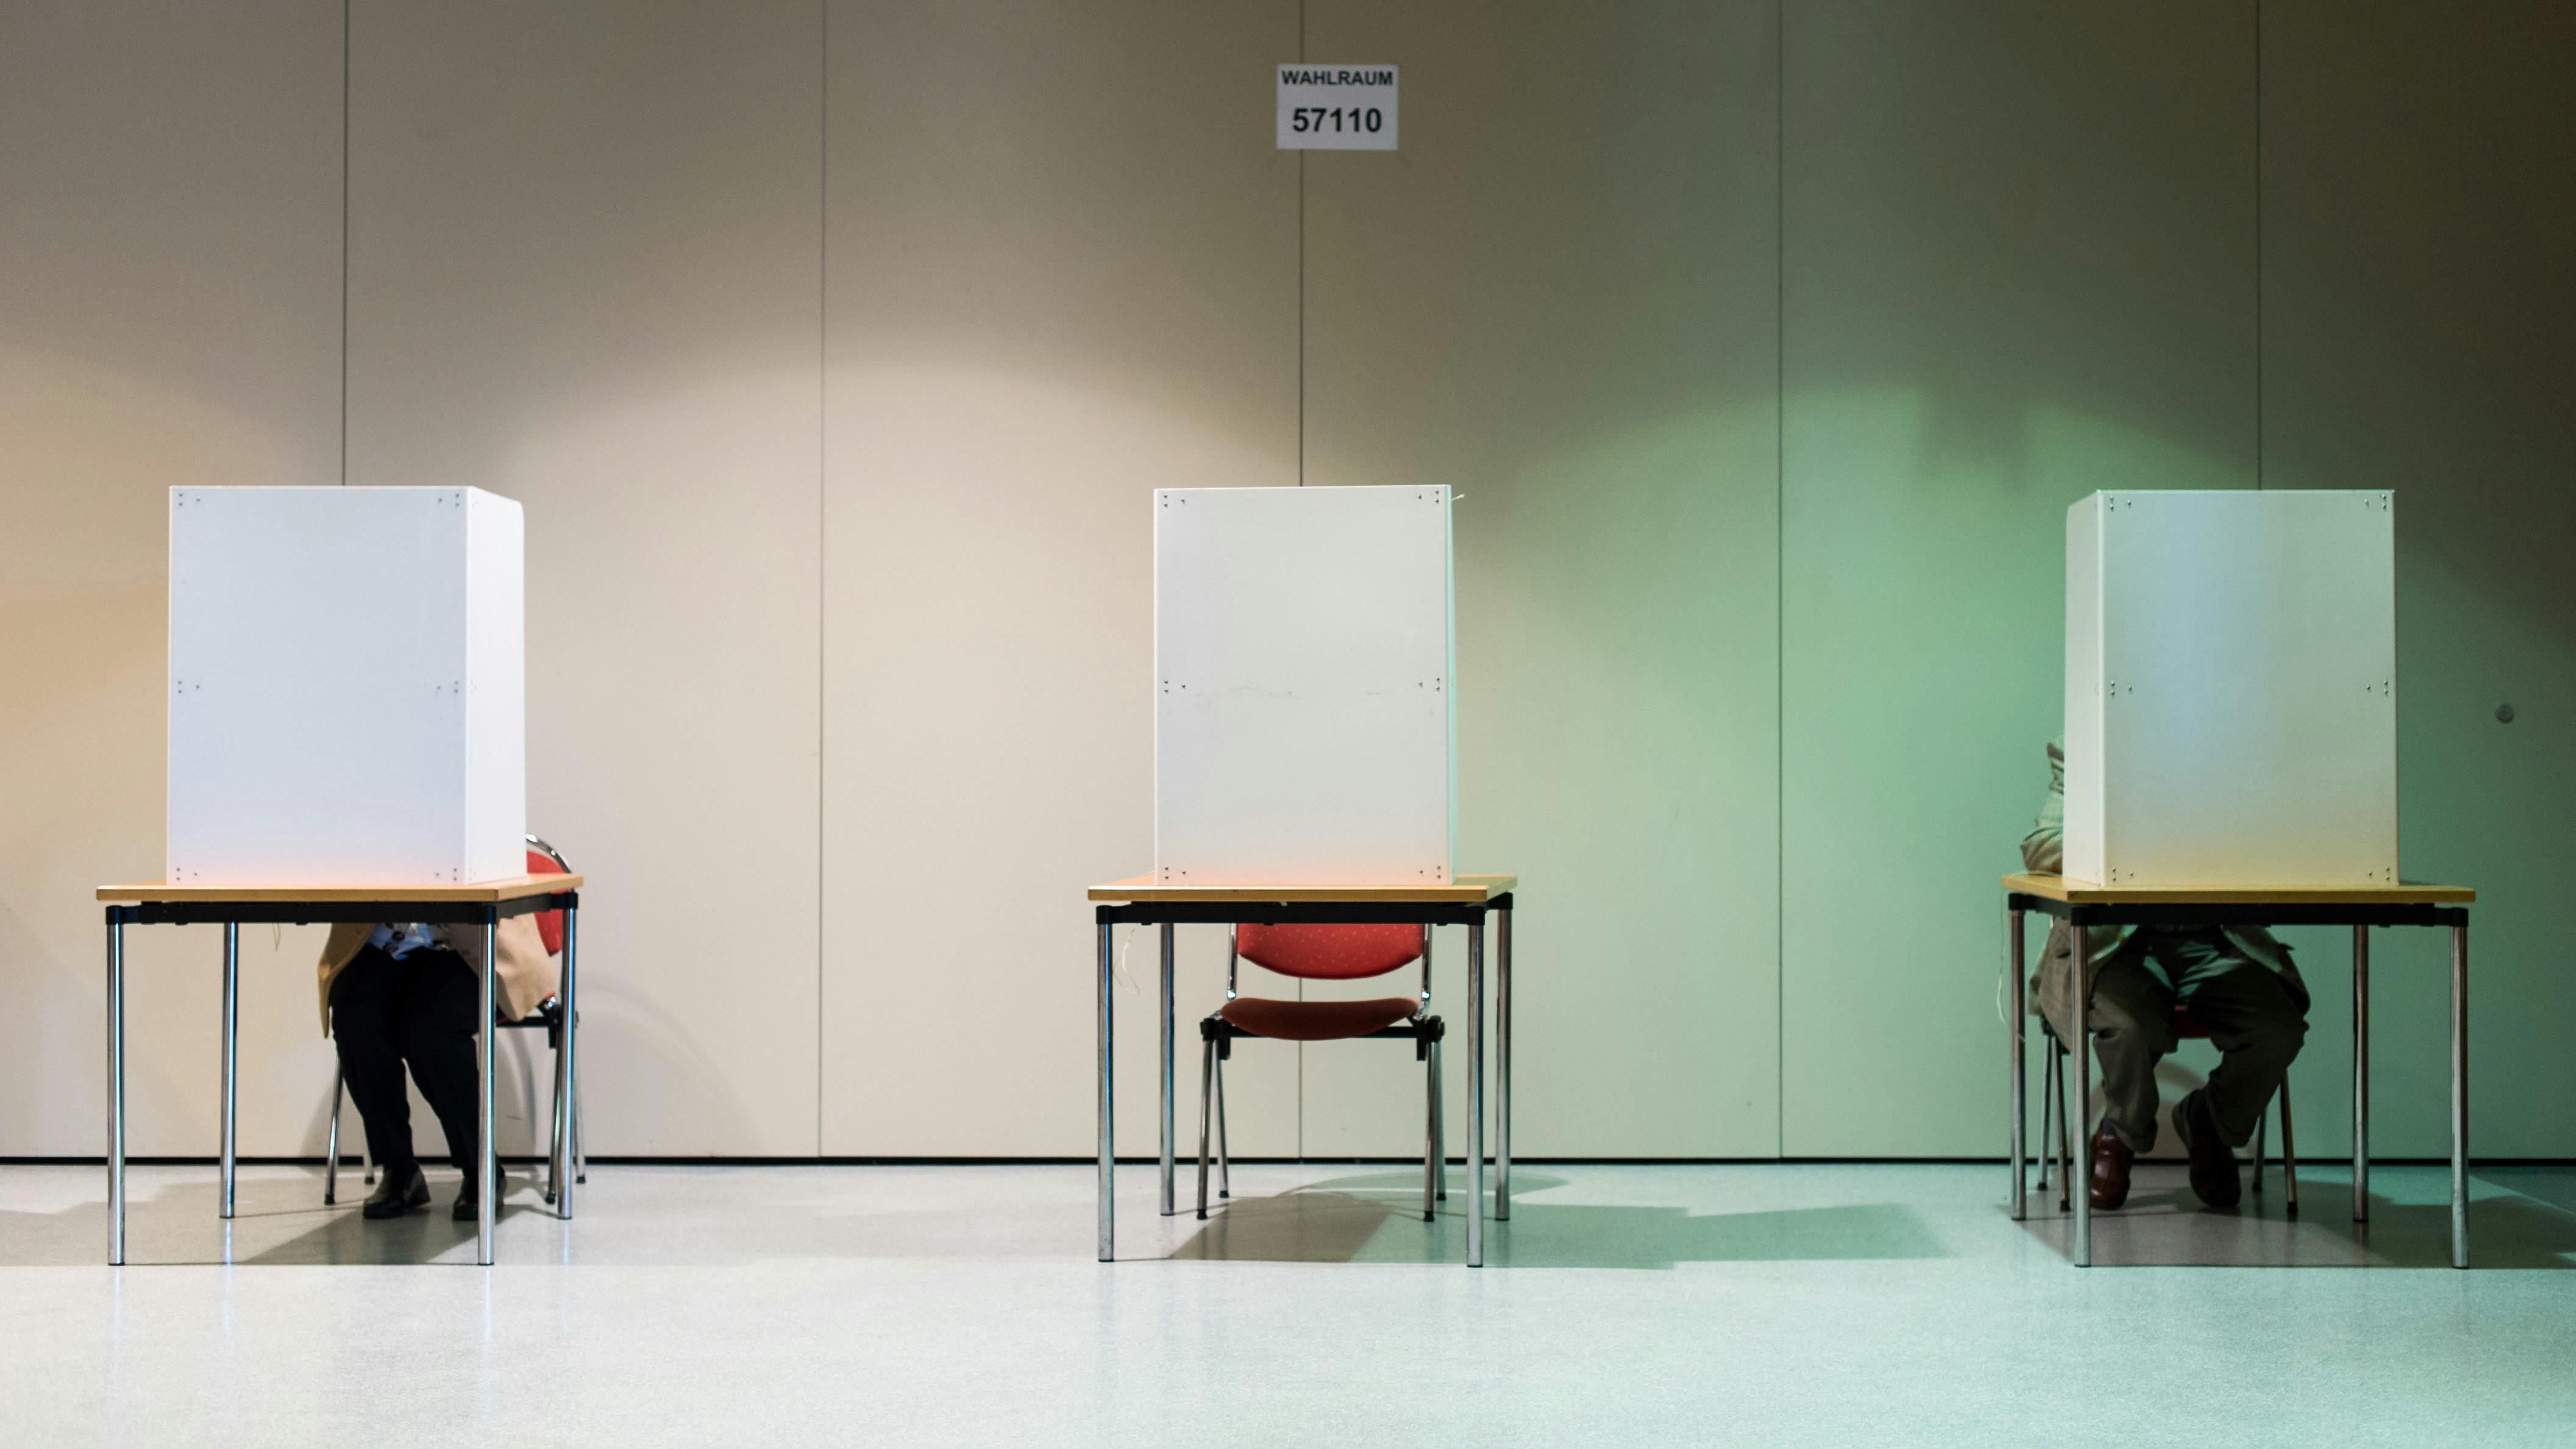 Drei Wahlkabinen stehen vor einer Wand mit Abstand im leichten Zwielicht aufgebaut, eine Person scheint in der äußerst linken zu sitzen. 